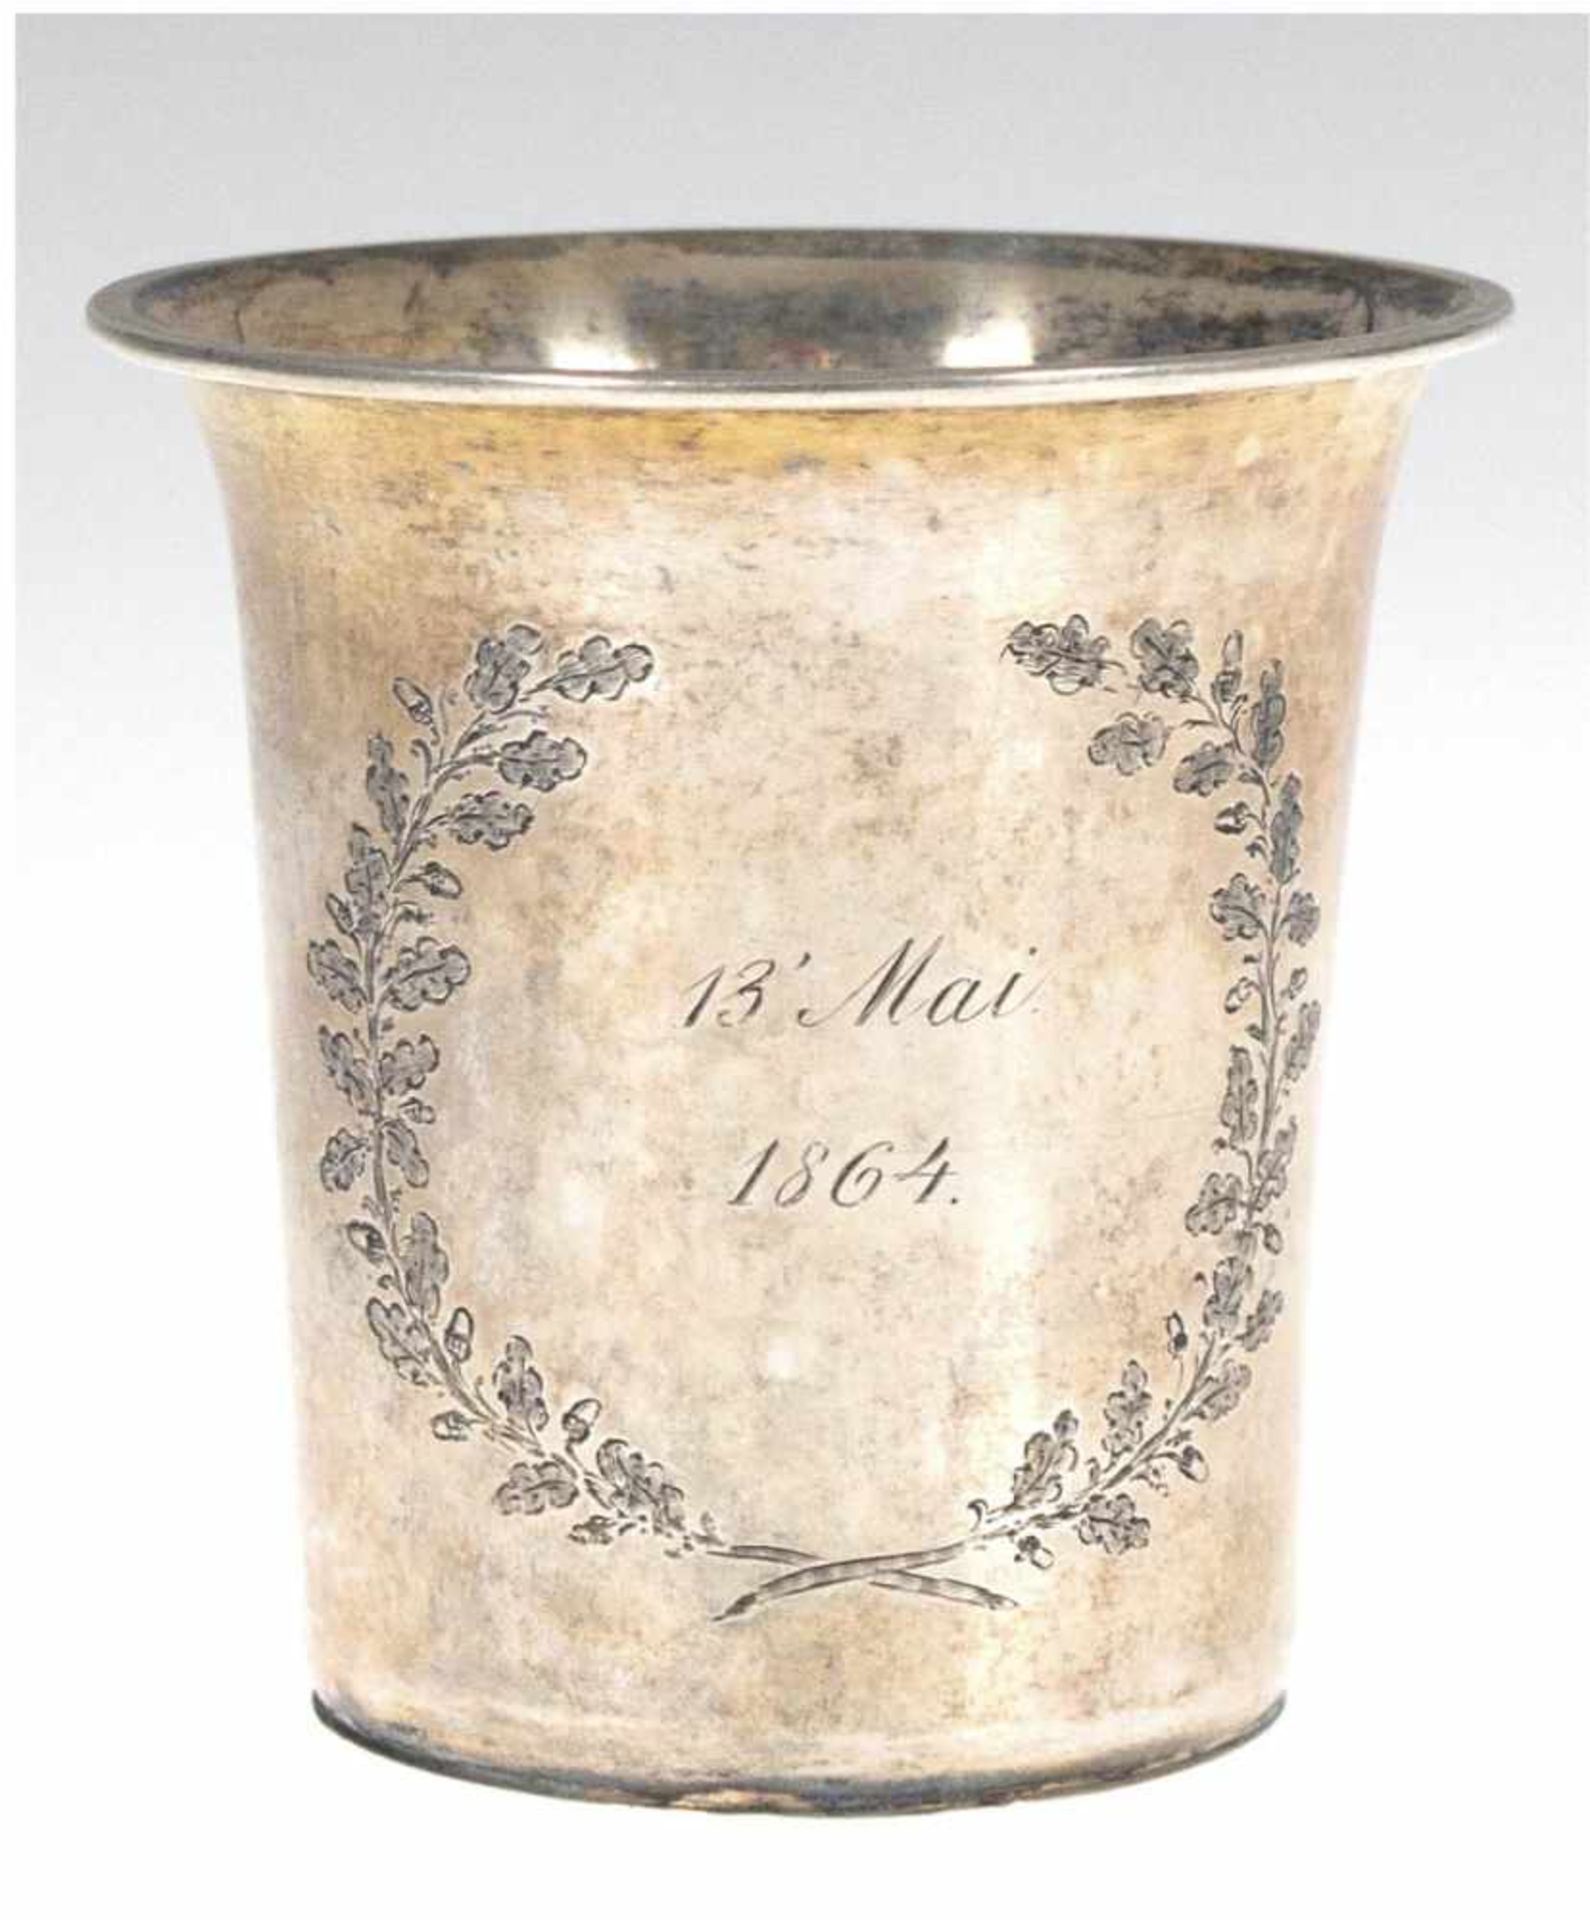 Becher, Silber mit Restvergoldung, punziert, ca. 70 g, von Eichenlaub gerahmtes Datum 13.Mai 1864,